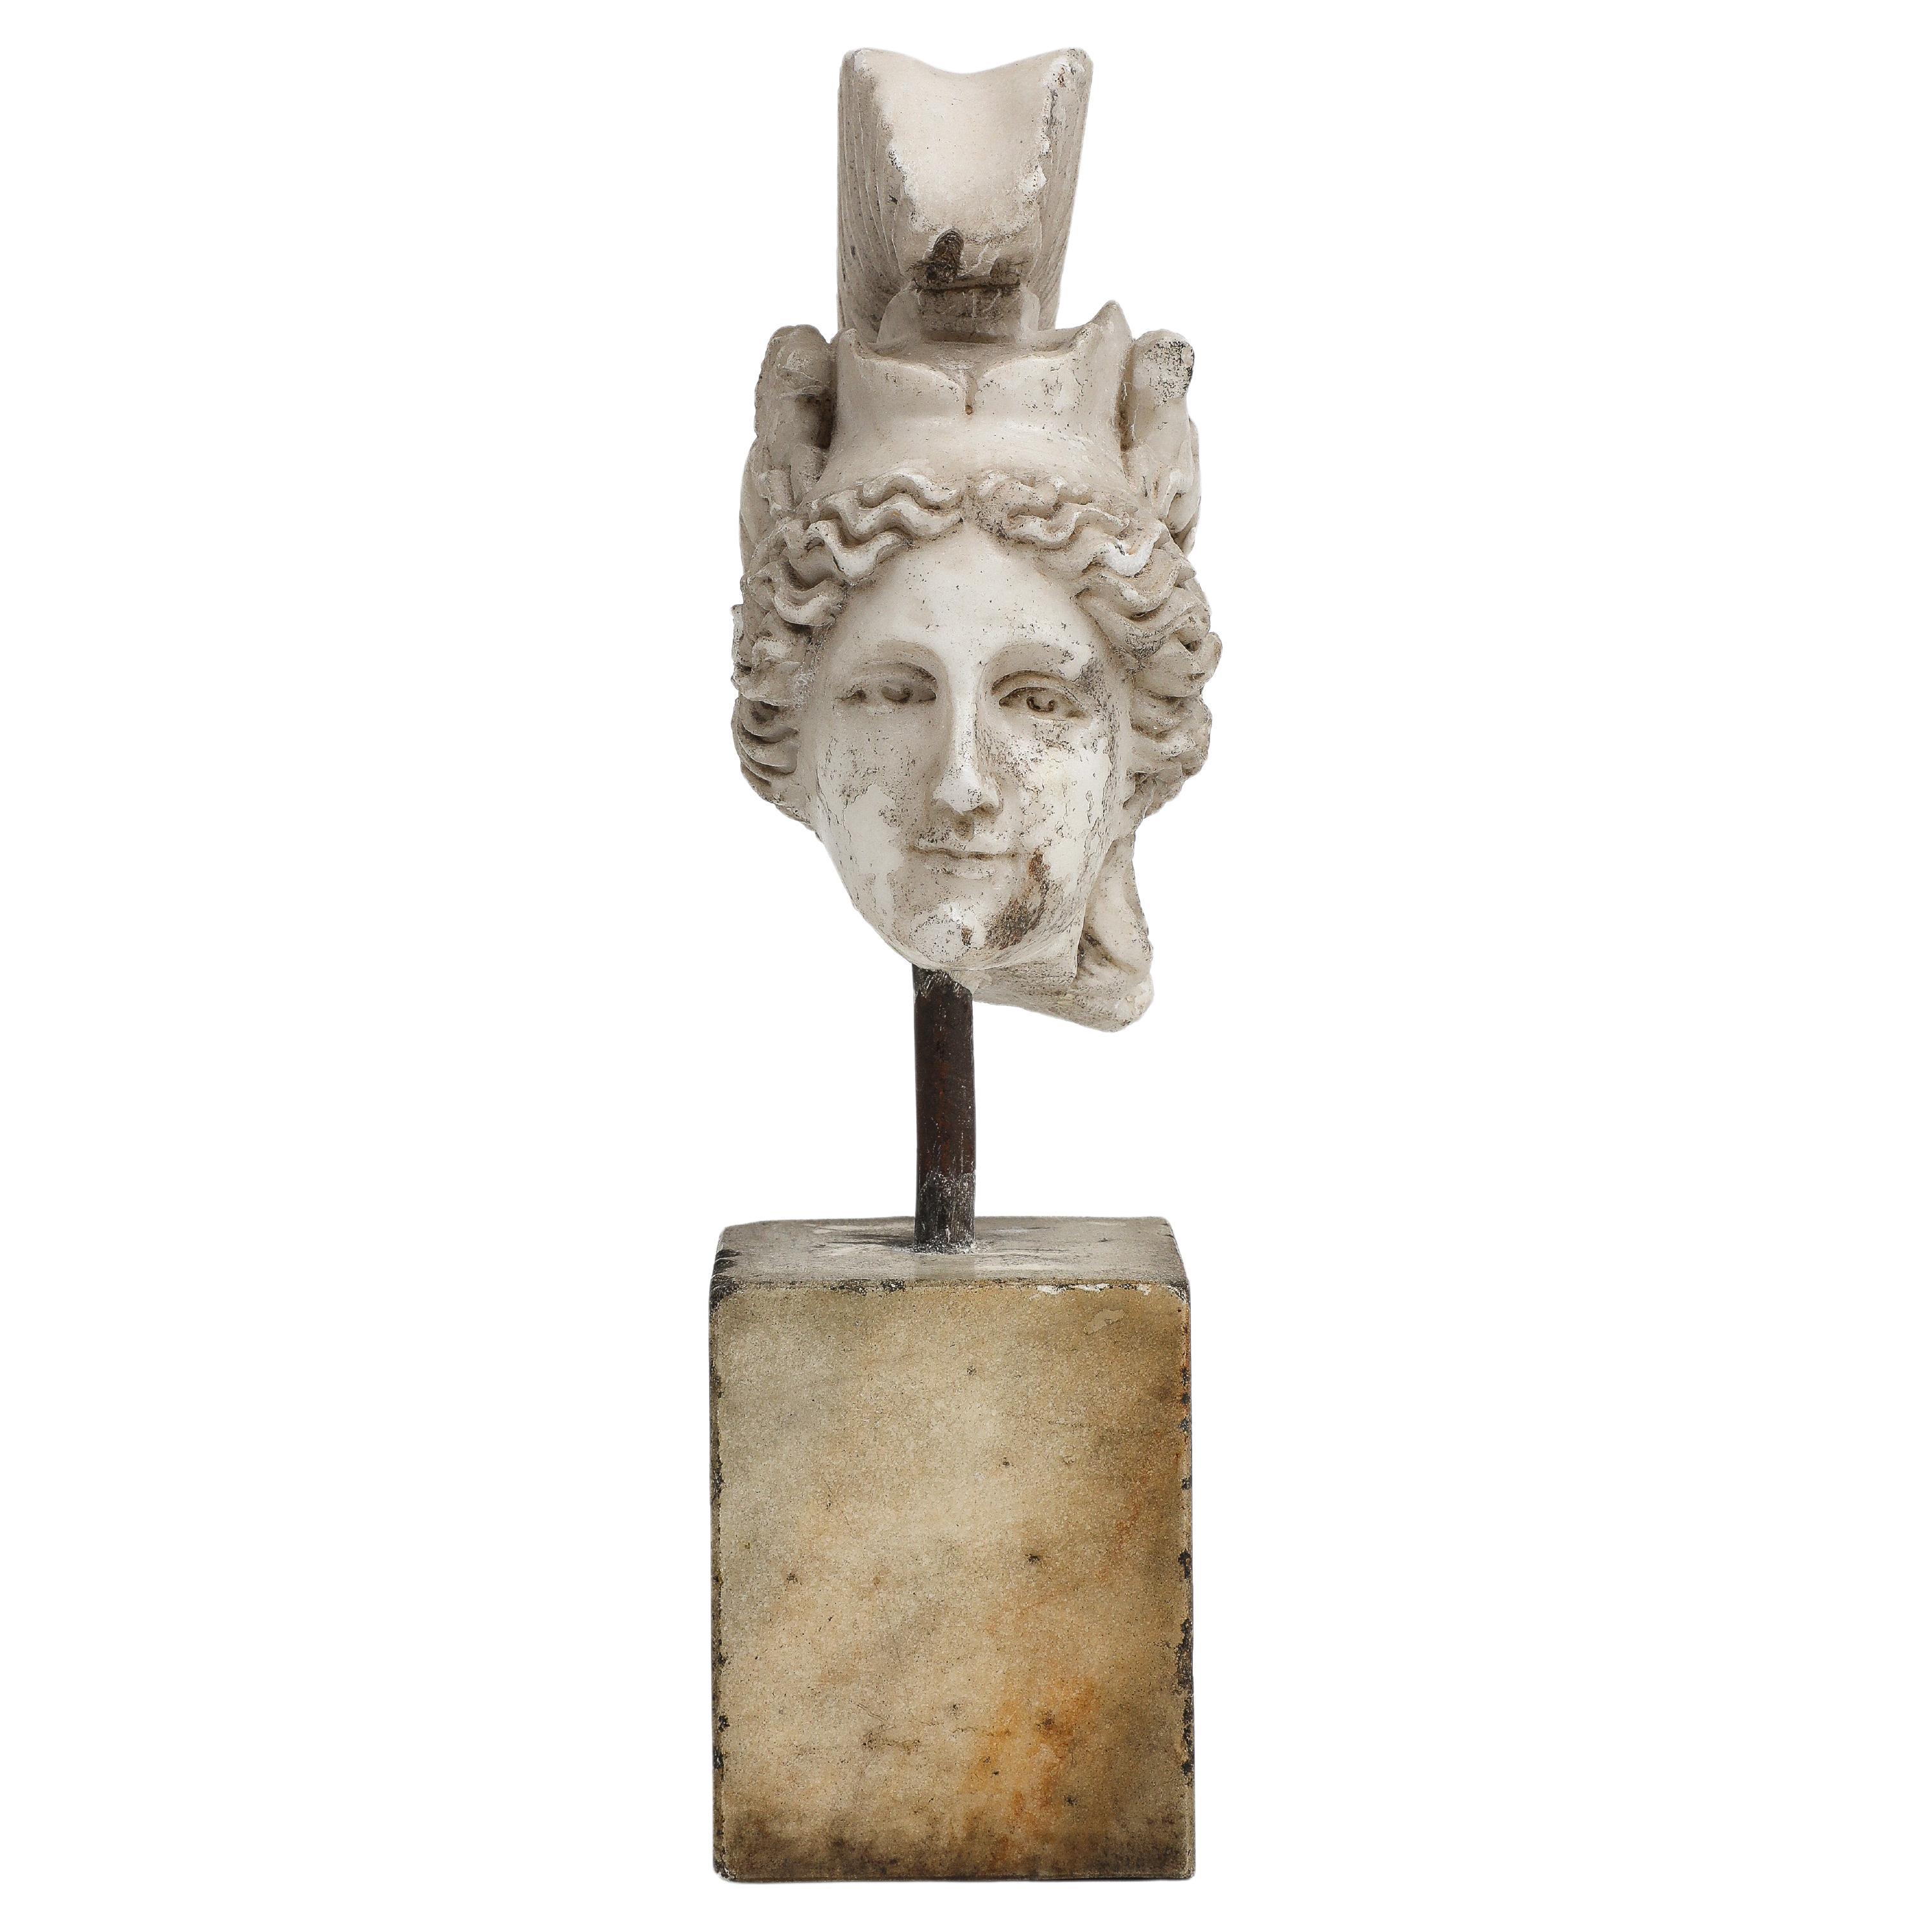 Petite sculpture de la tête de Minerva en marbre blanc, sur une base parallélépipédique, 19e siècle grec. 

Minerva est la déesse romaine de la poésie, de la médecine, du commerce, du tissage, de l'artisanat et de la sagesse. Elle est représentée